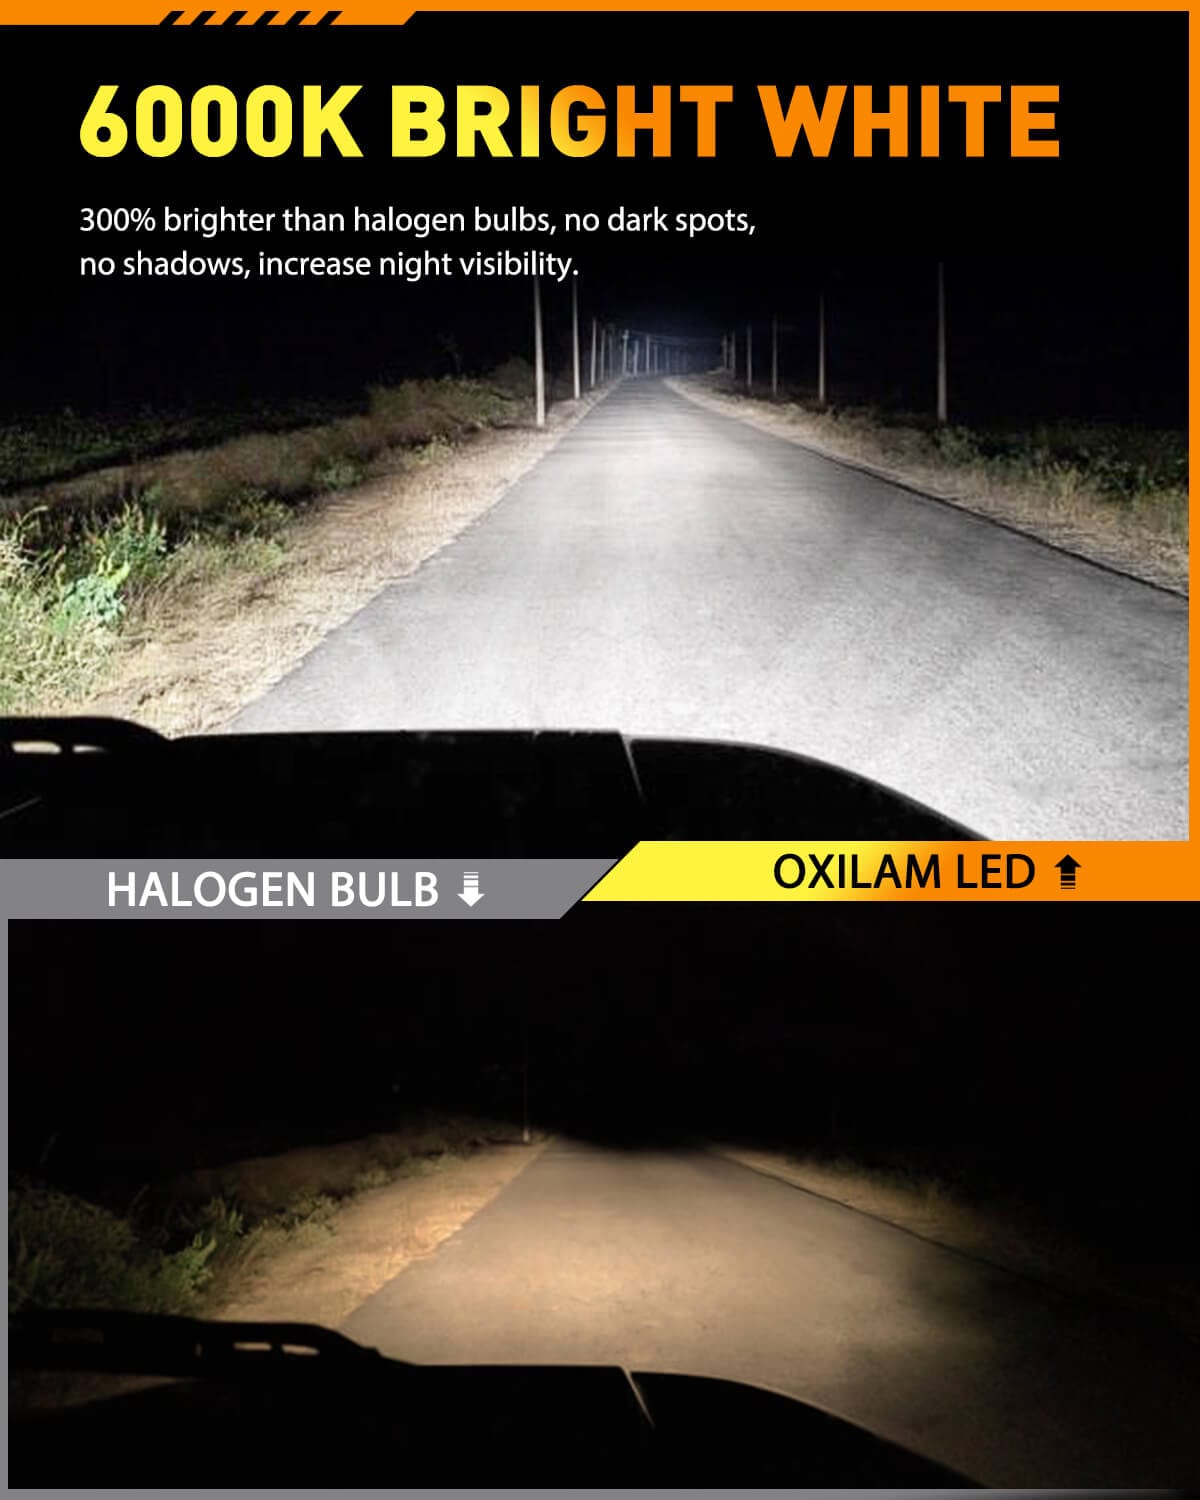 OXILAM H11 LED Headlight Bulbs, 13000LM 6000K White Super Bright LED  Conversion Kit, Fanless Mini Plug and Play